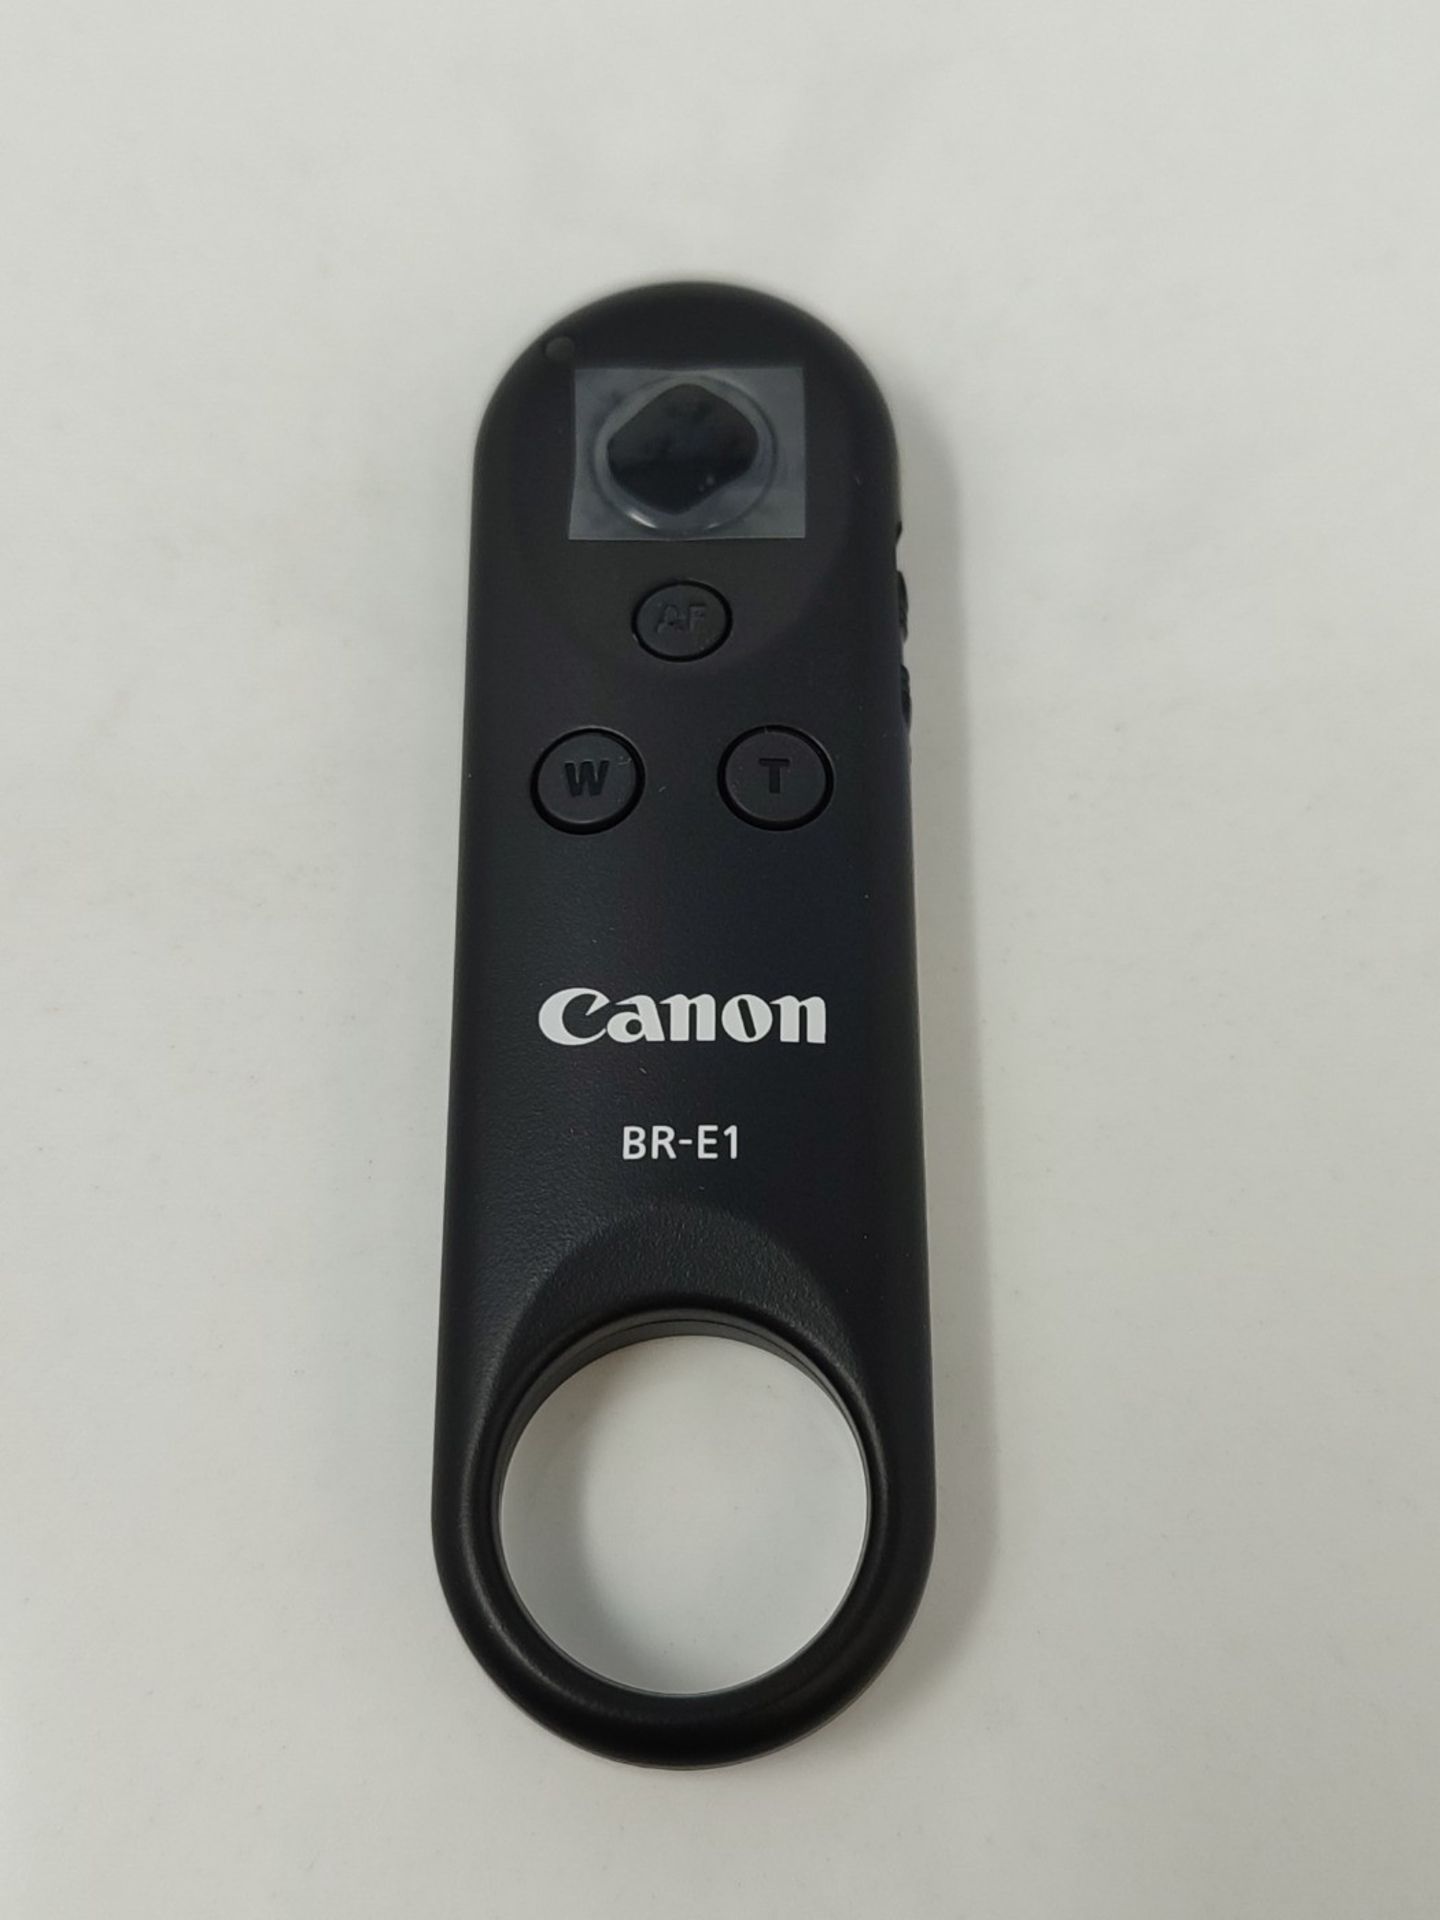 CANON Remote Control BR-E1 - Image 3 of 6